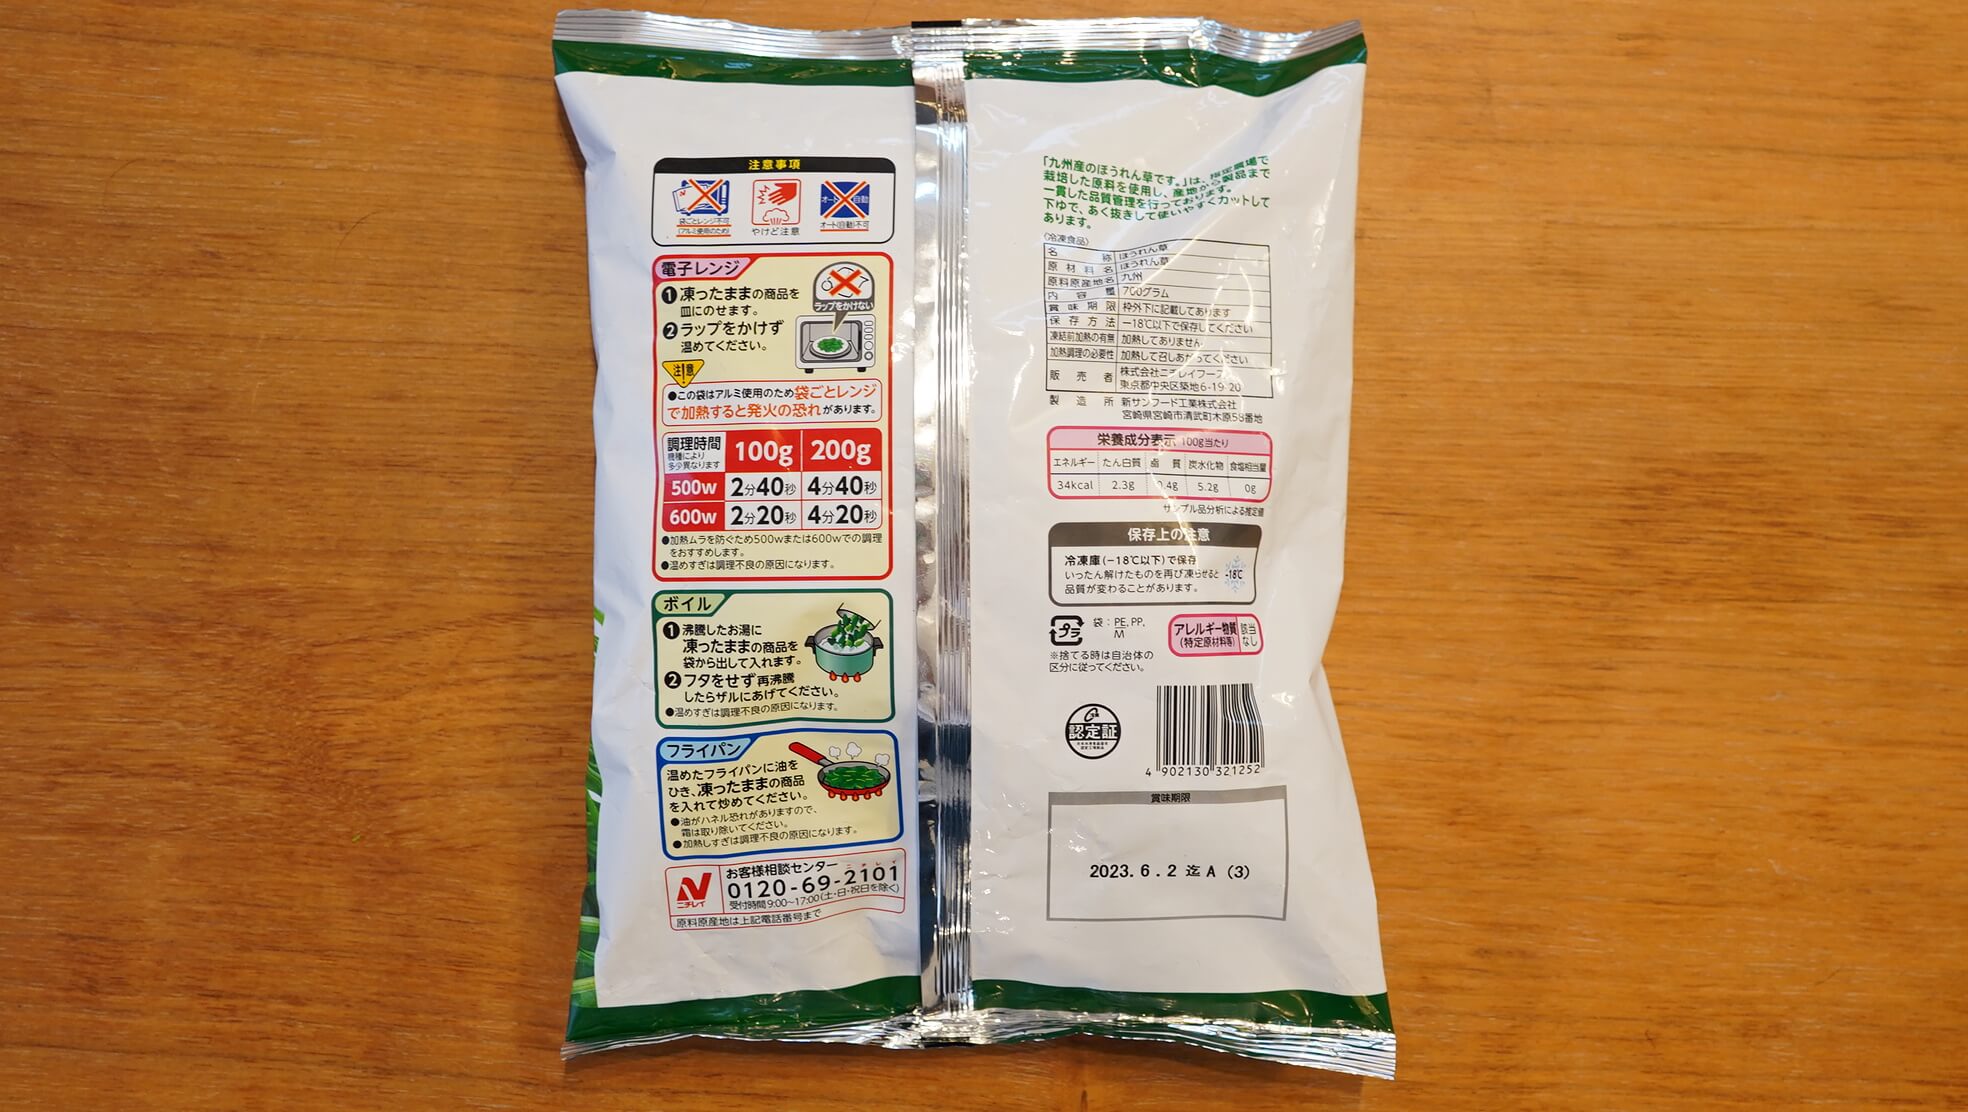 コストコの冷凍食品ニチレイ「九州産のほうれん草です。」のパッケージ裏面の写真